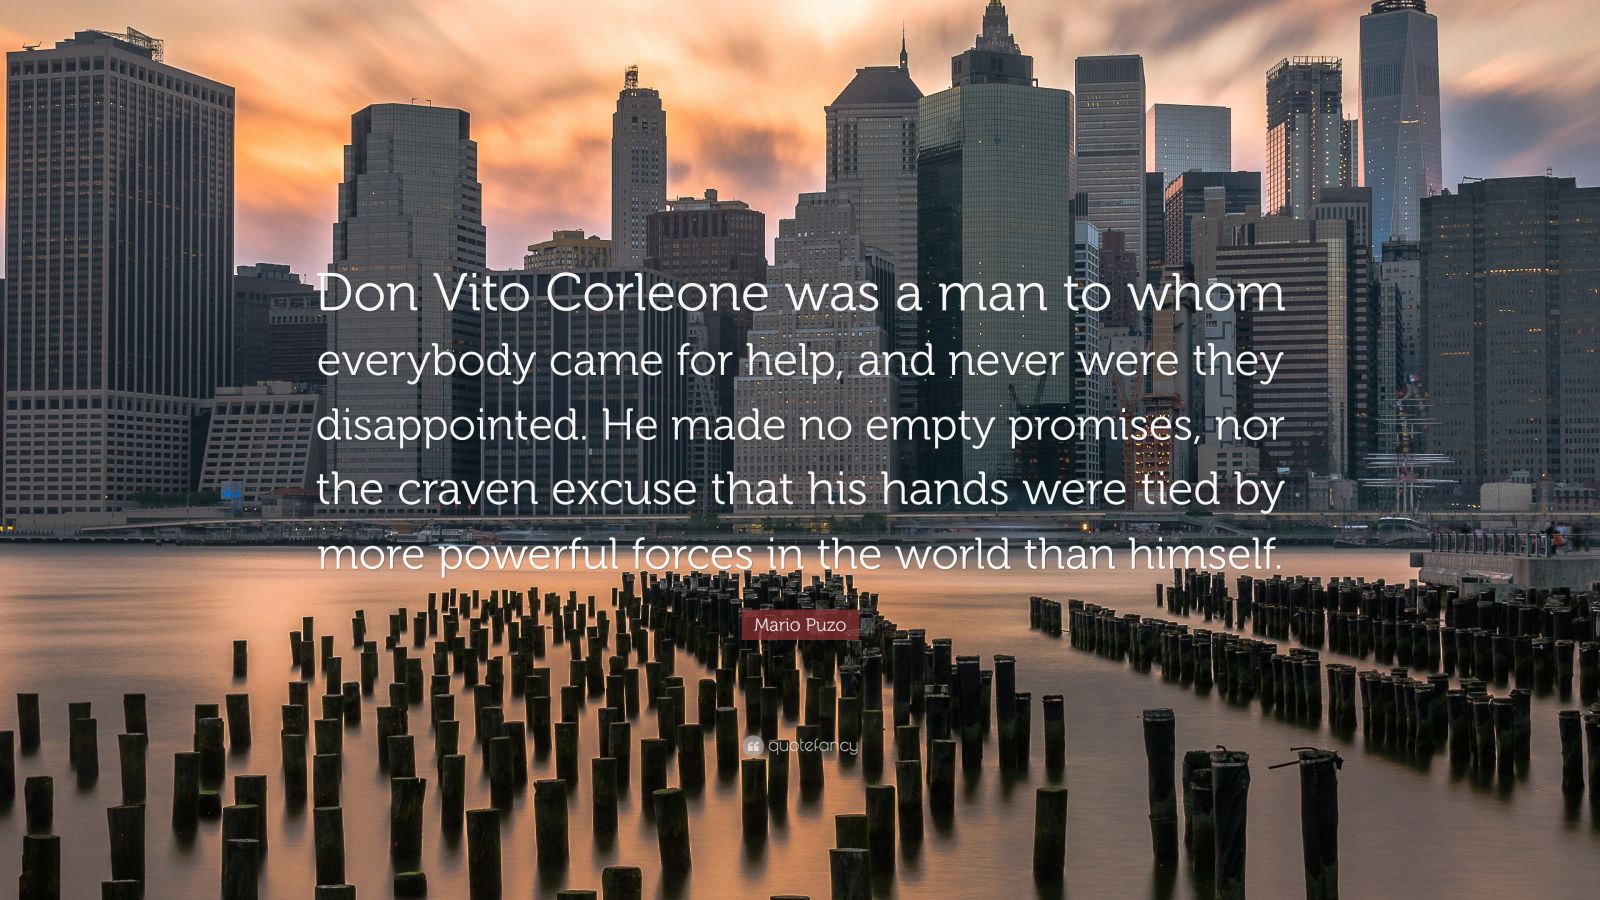 Corleone quotes vito Don Vito